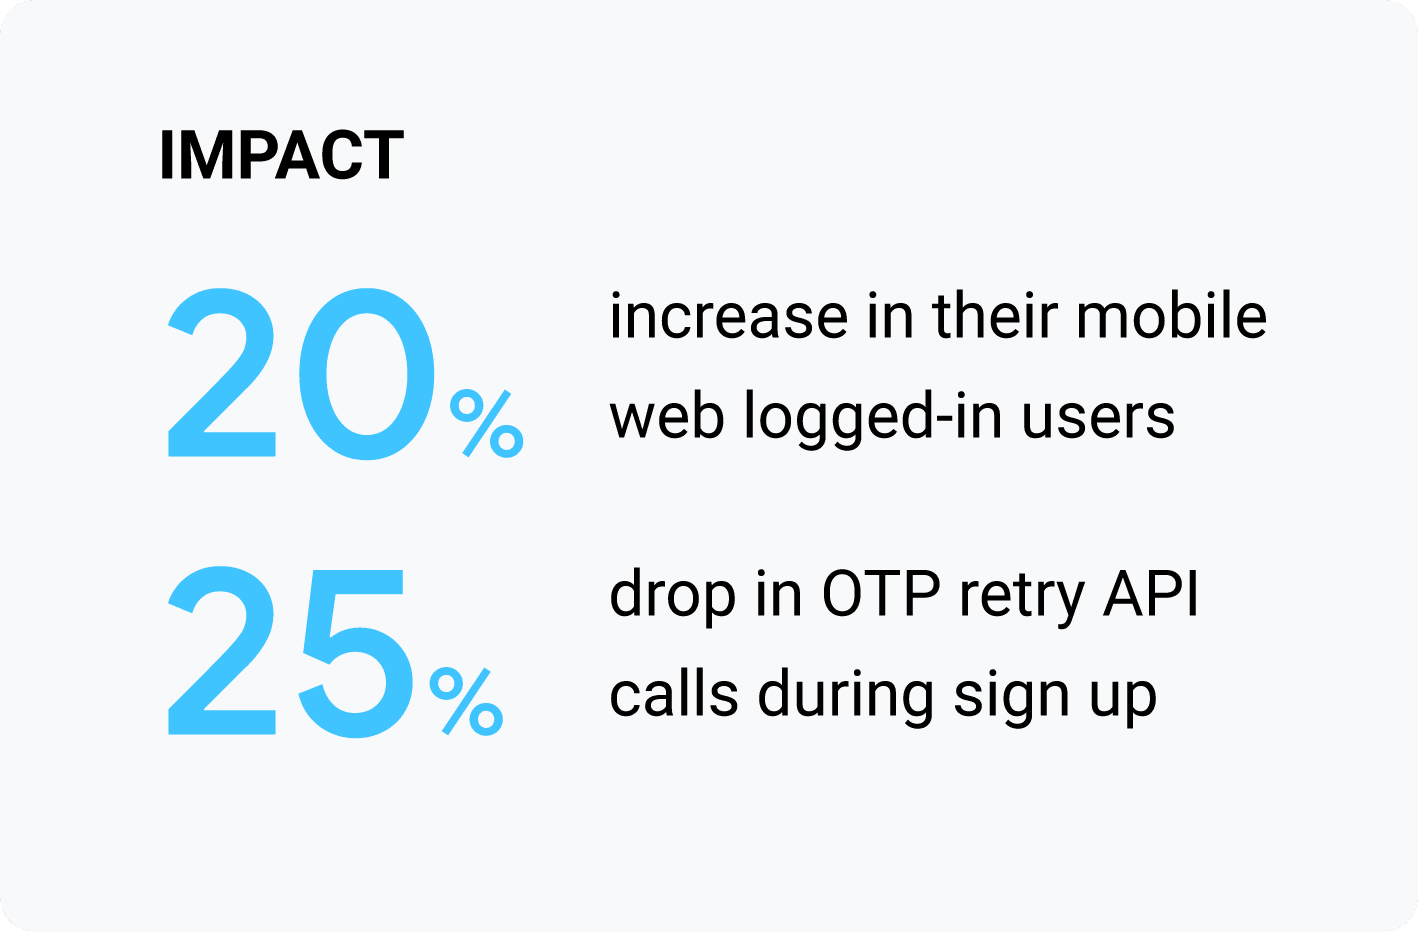 প্রভাব: তাদের মোবাইল ওয়েবে লগ ইন করা ব্যবহারকারীদের 20% বৃদ্ধি; সাইন আপ করার সময় OTP পুনরায় চেষ্টা করার API কলে 25% ড্রপ।